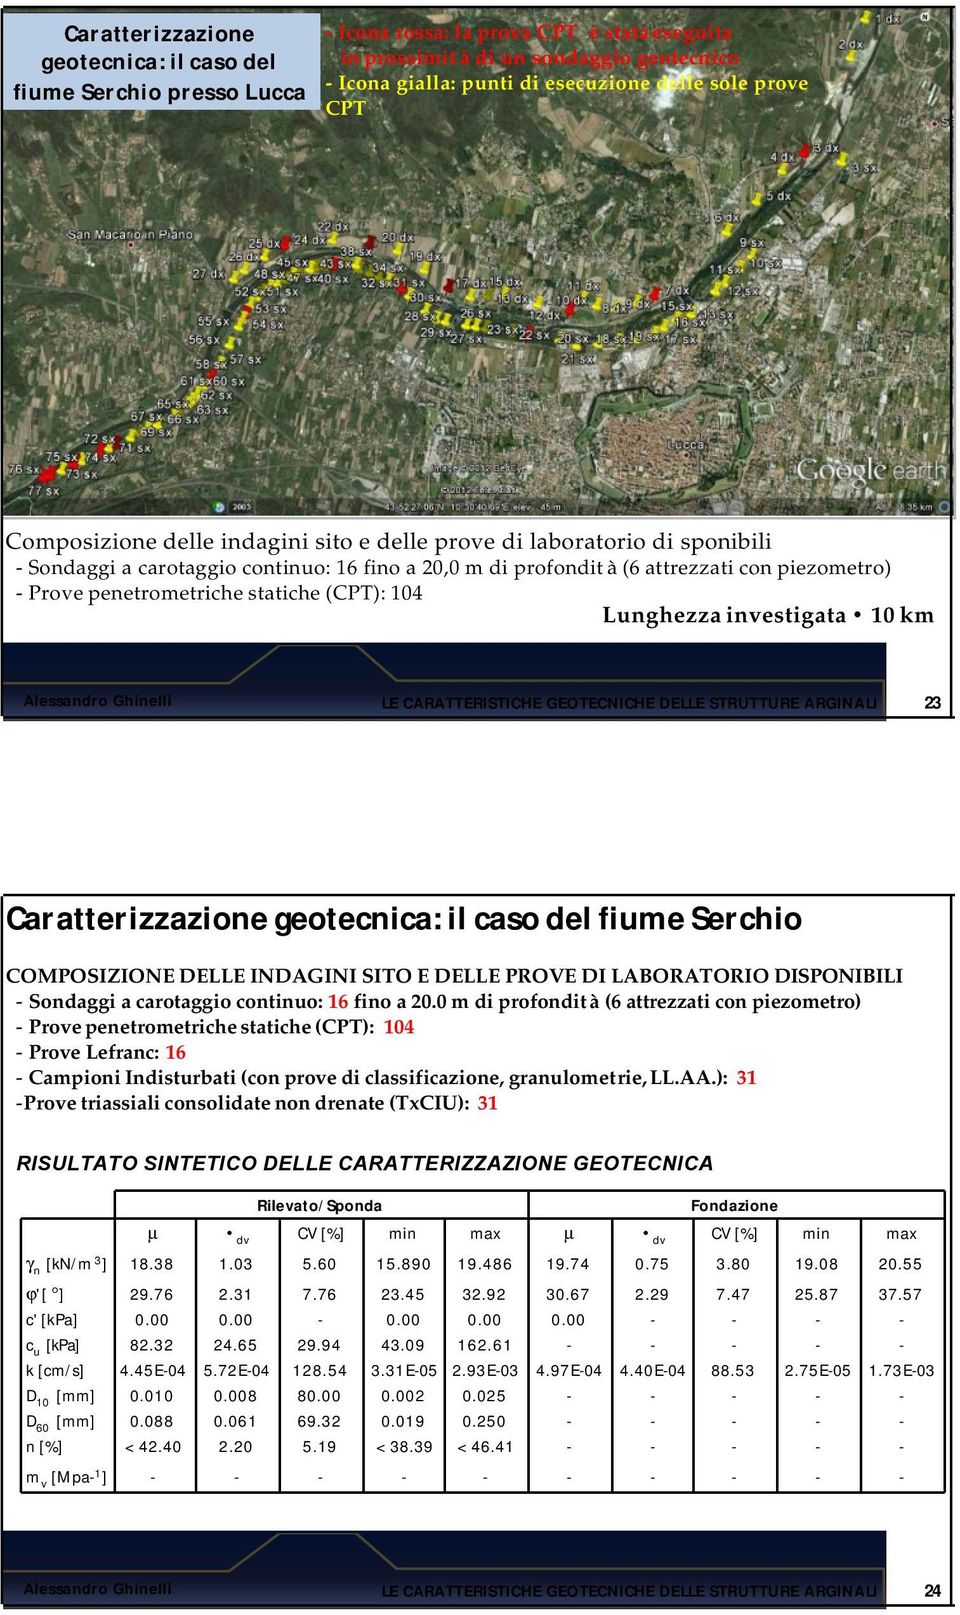 penetrometriche statiche (CPT): 104 Lunghezza investigata 10 km 23 Caratterizzazione geotecnica: il caso del fiume Serchio COMPOSIZIONE DELLE INDAGINI SITO E DELLE PROVE DI LABORATORIO DISPONIBILI -